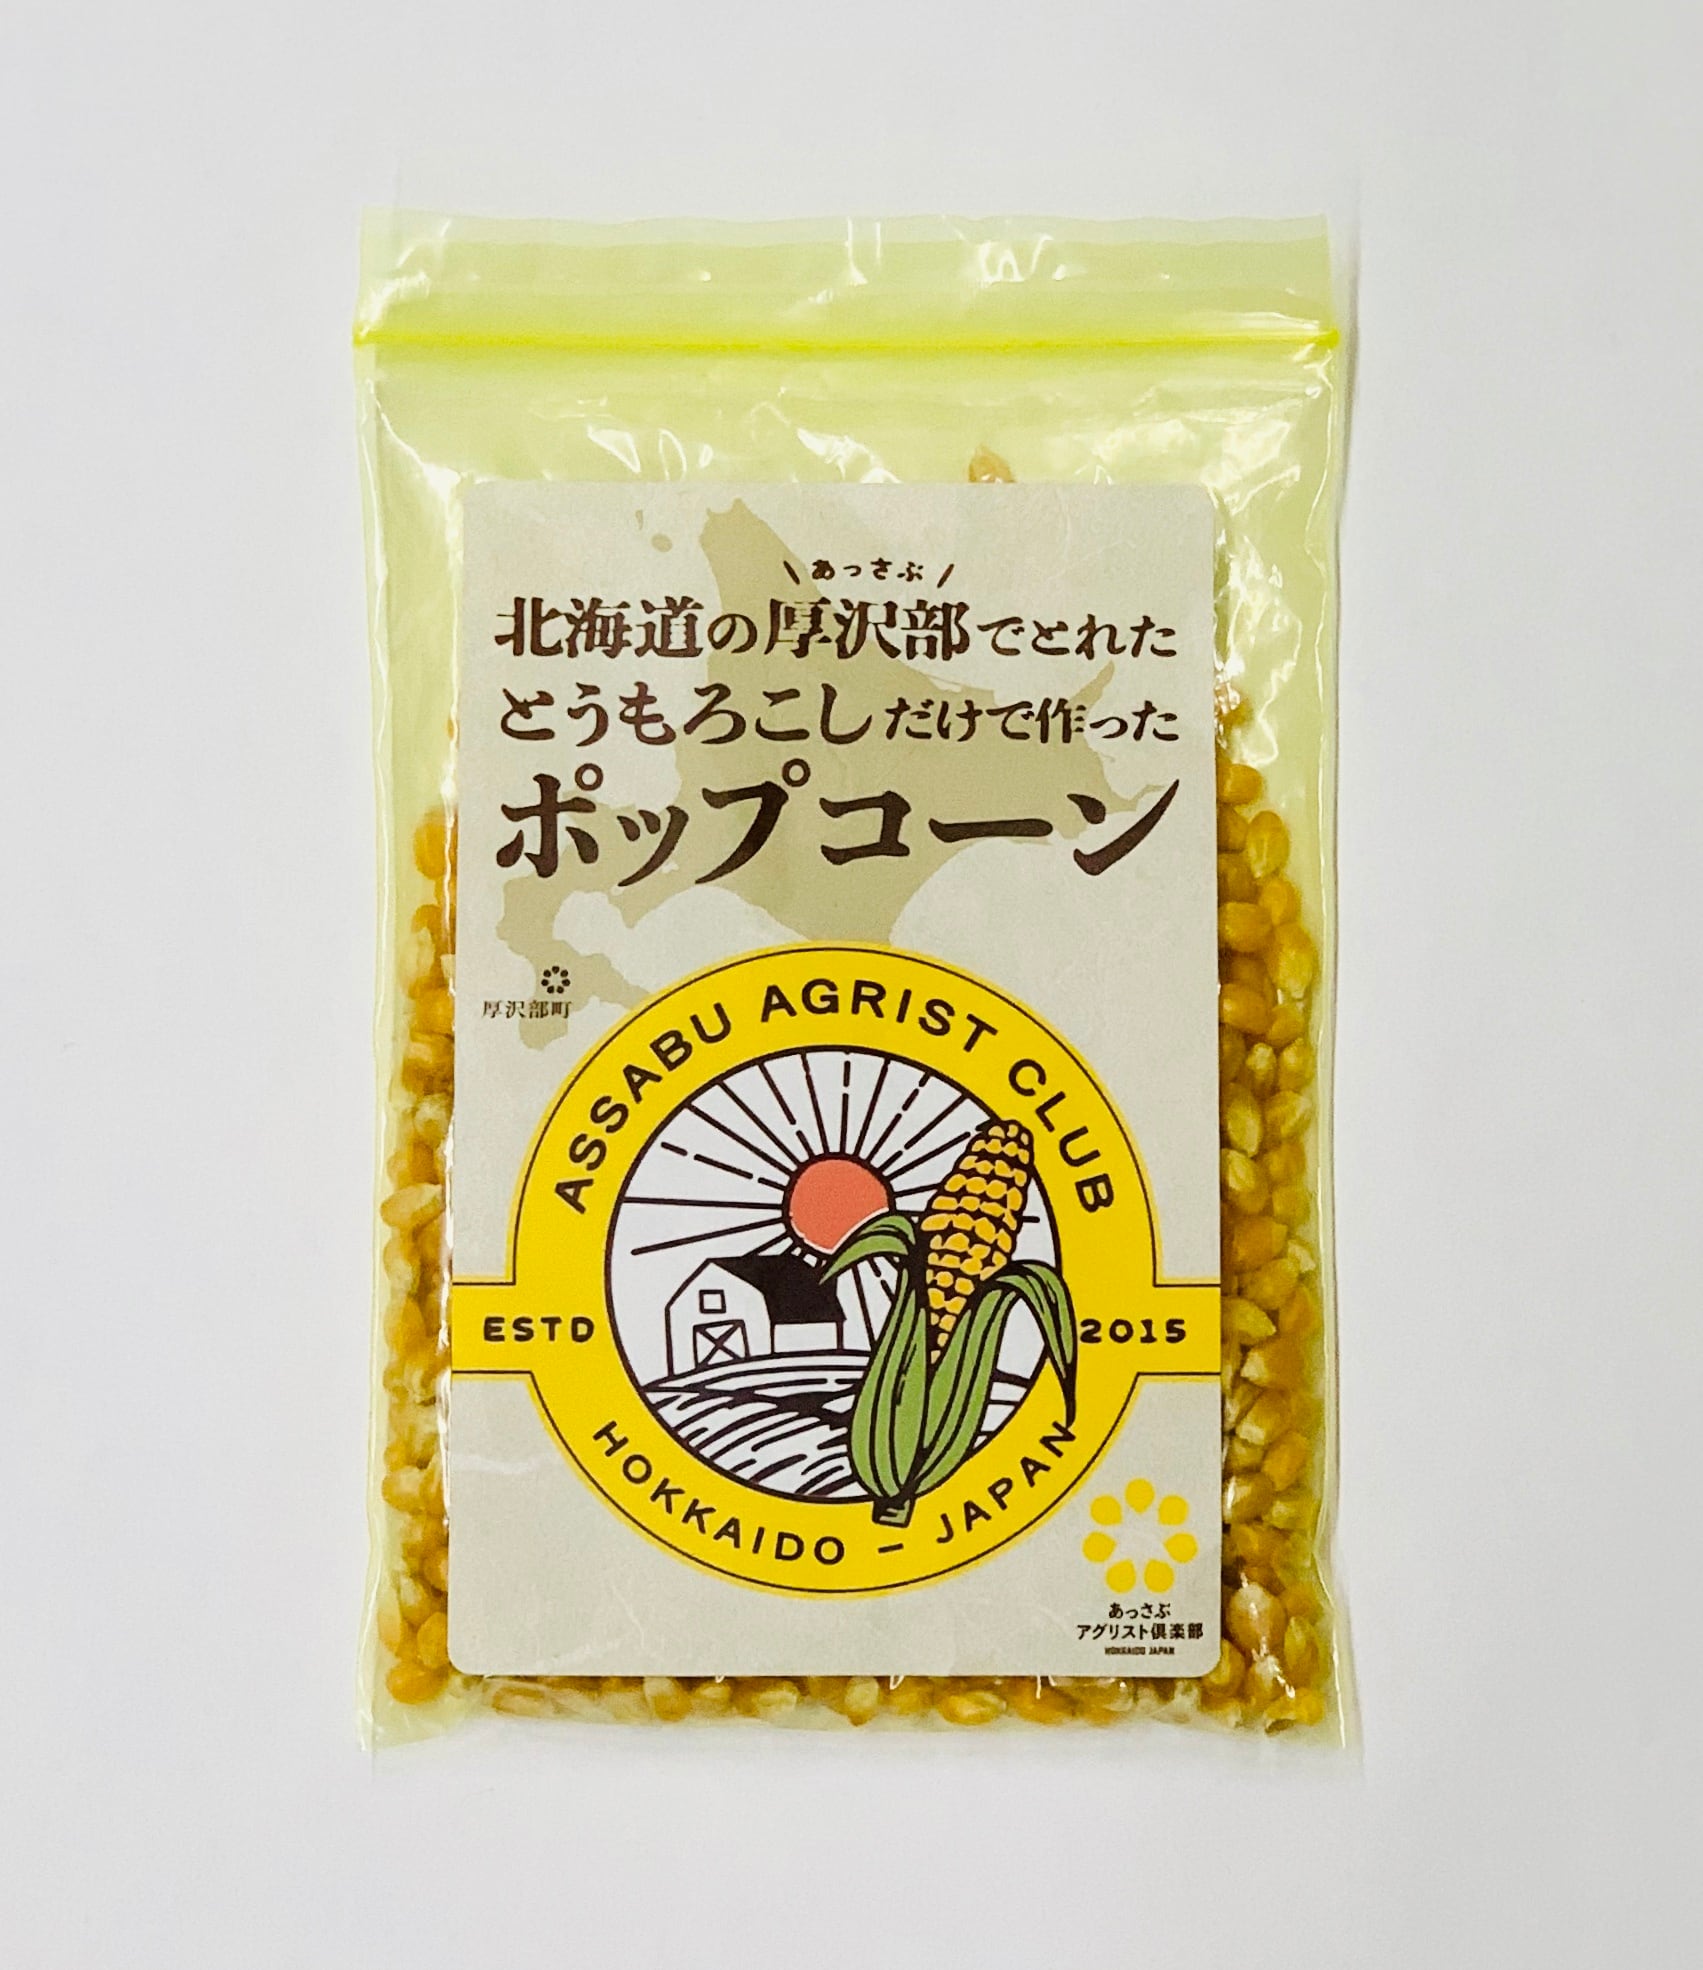 ポップコーン豆100g 【公式】通販CHIKYU 麹町DELI